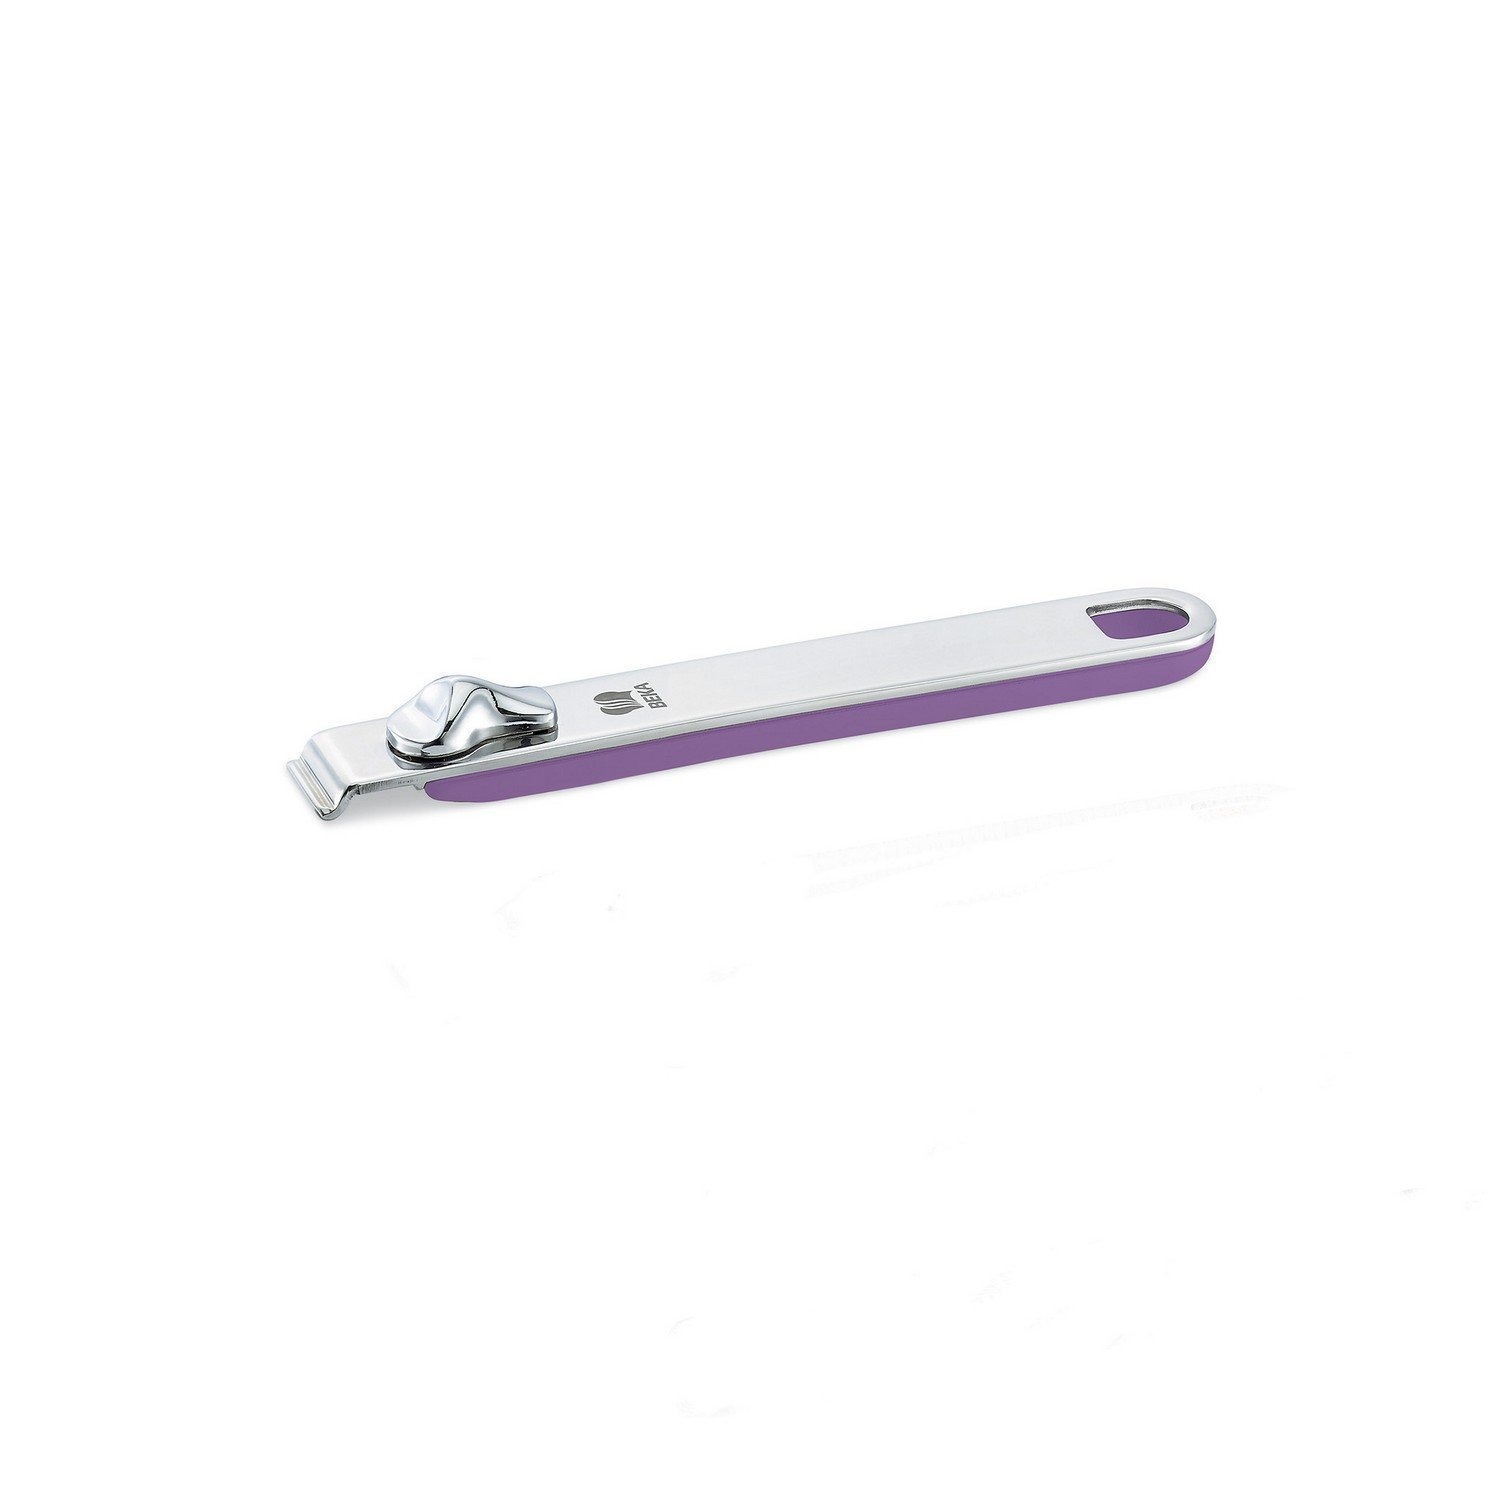 Ручка съемная длинная Beka select фиолетовая 18,5 см расческа массажная вентилируемая прорезиненная ручка 4 2 × 23 см фиолетовый